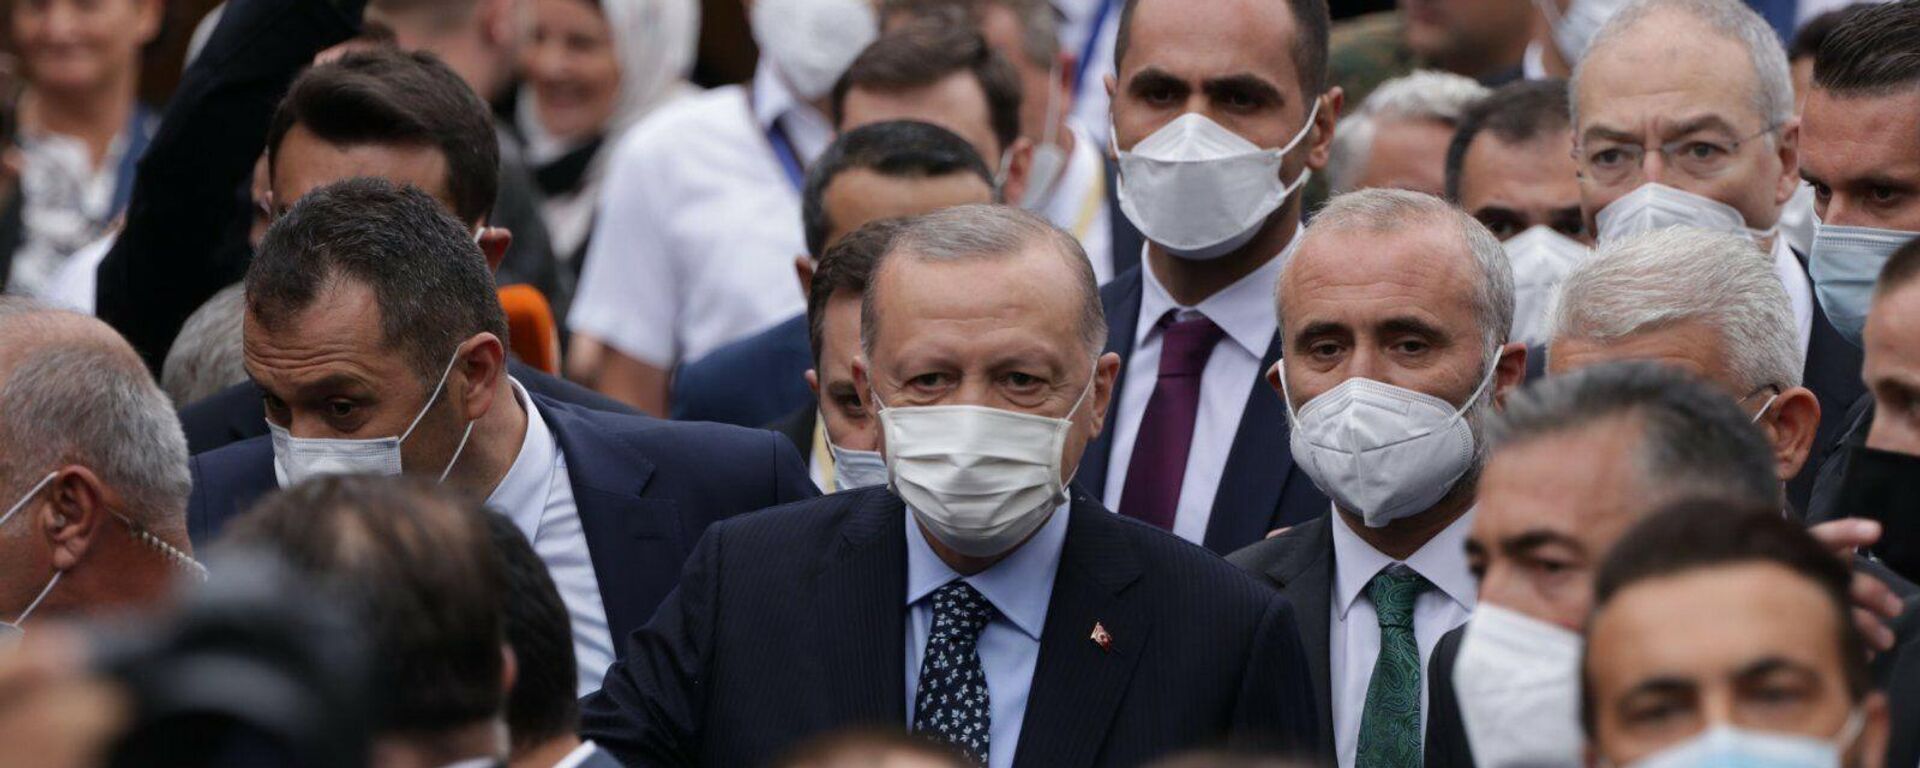 Турски председник Реџеп Тајип Ердоган у Сарајеву - Sputnik Србија, 1920, 27.08.2021